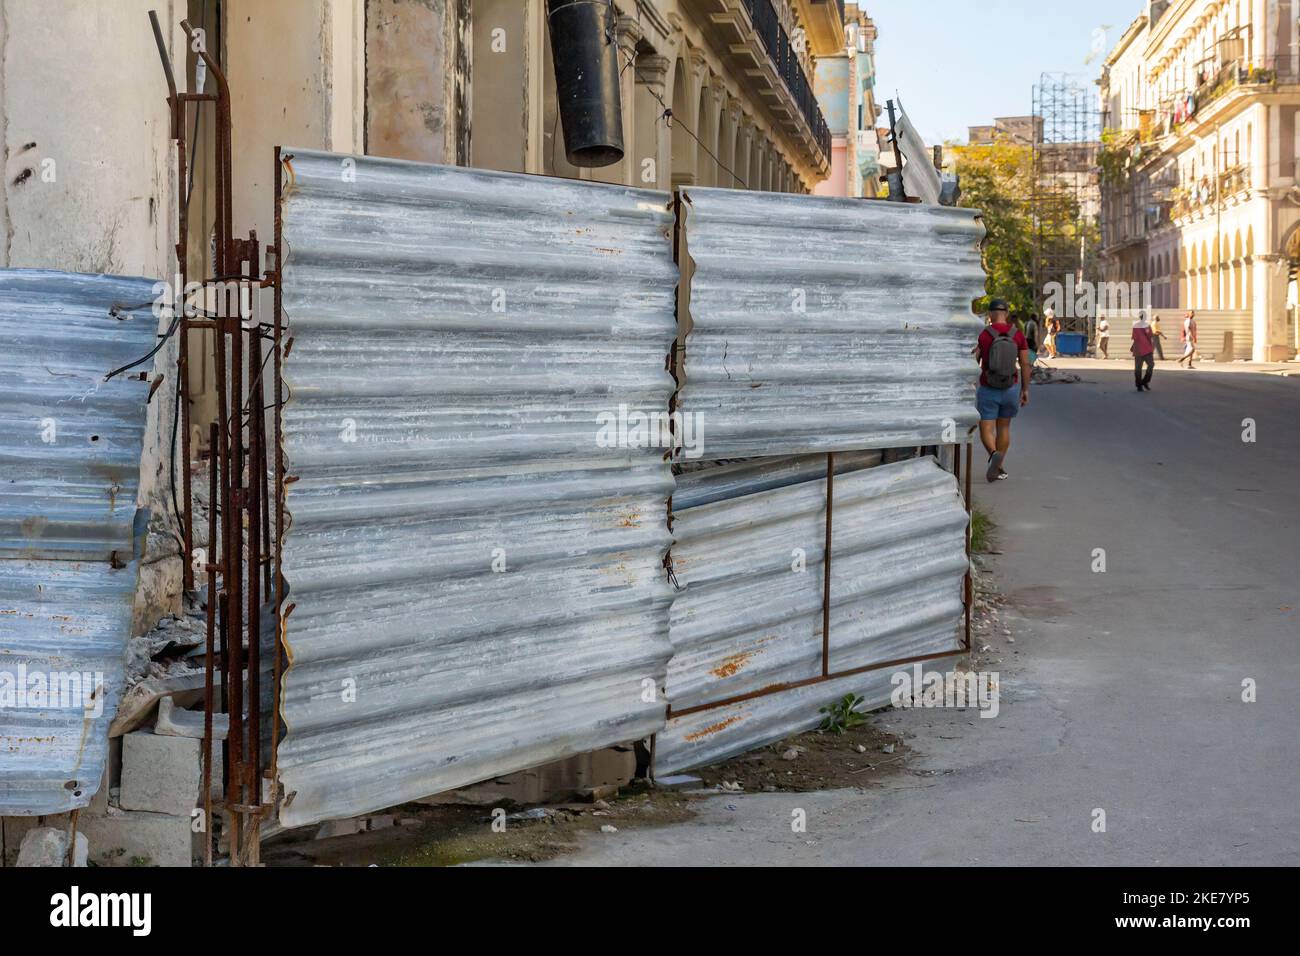 Una vieja valla metálica dilapidada protege un edificio en peligro de derrumbarse. Foto de stock